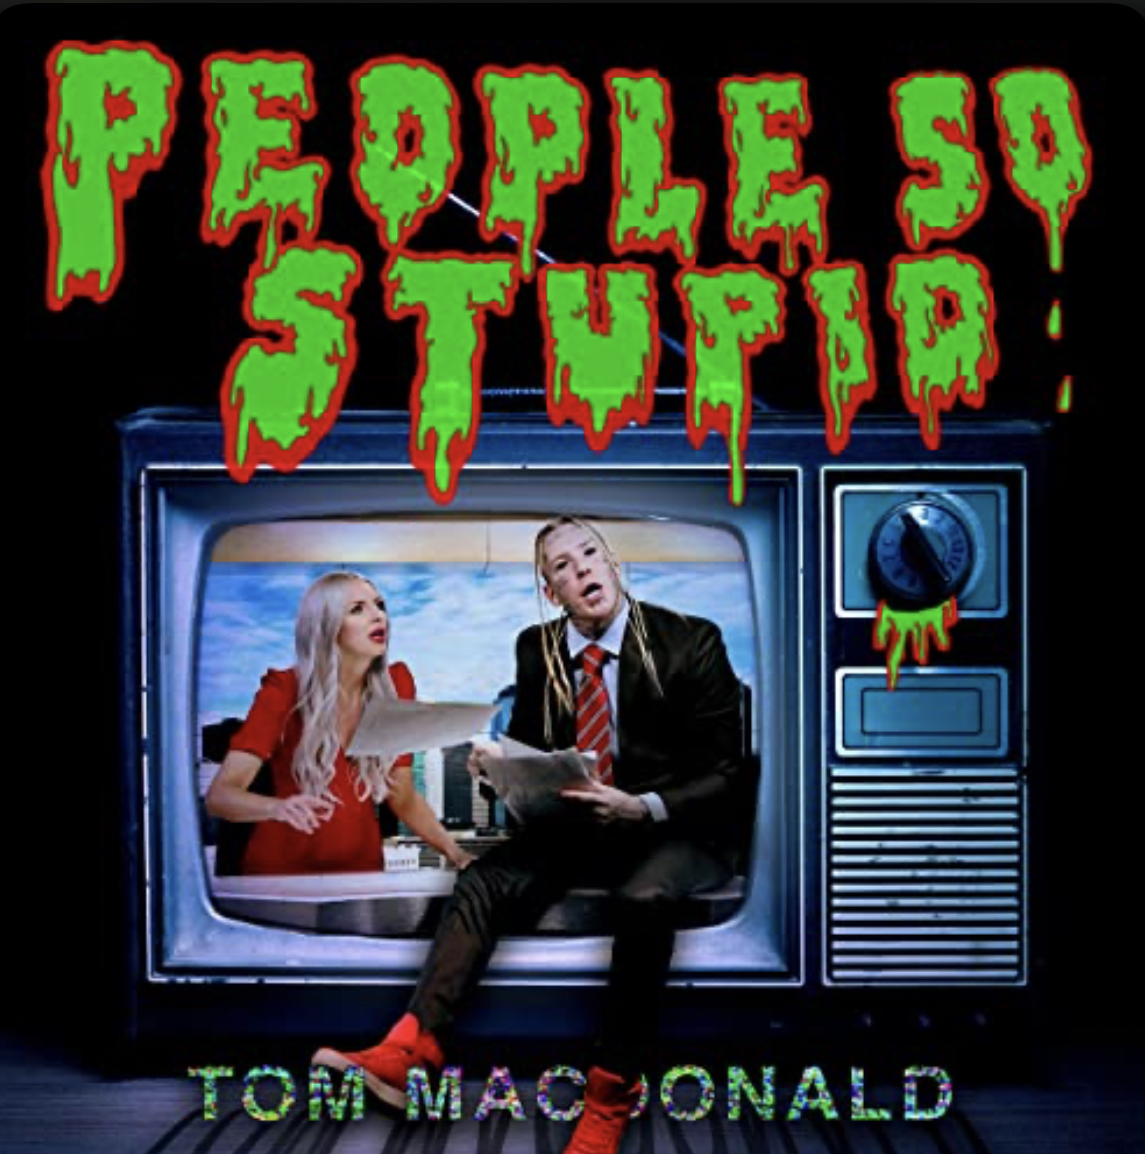 Tom macdonald people so stupid music video